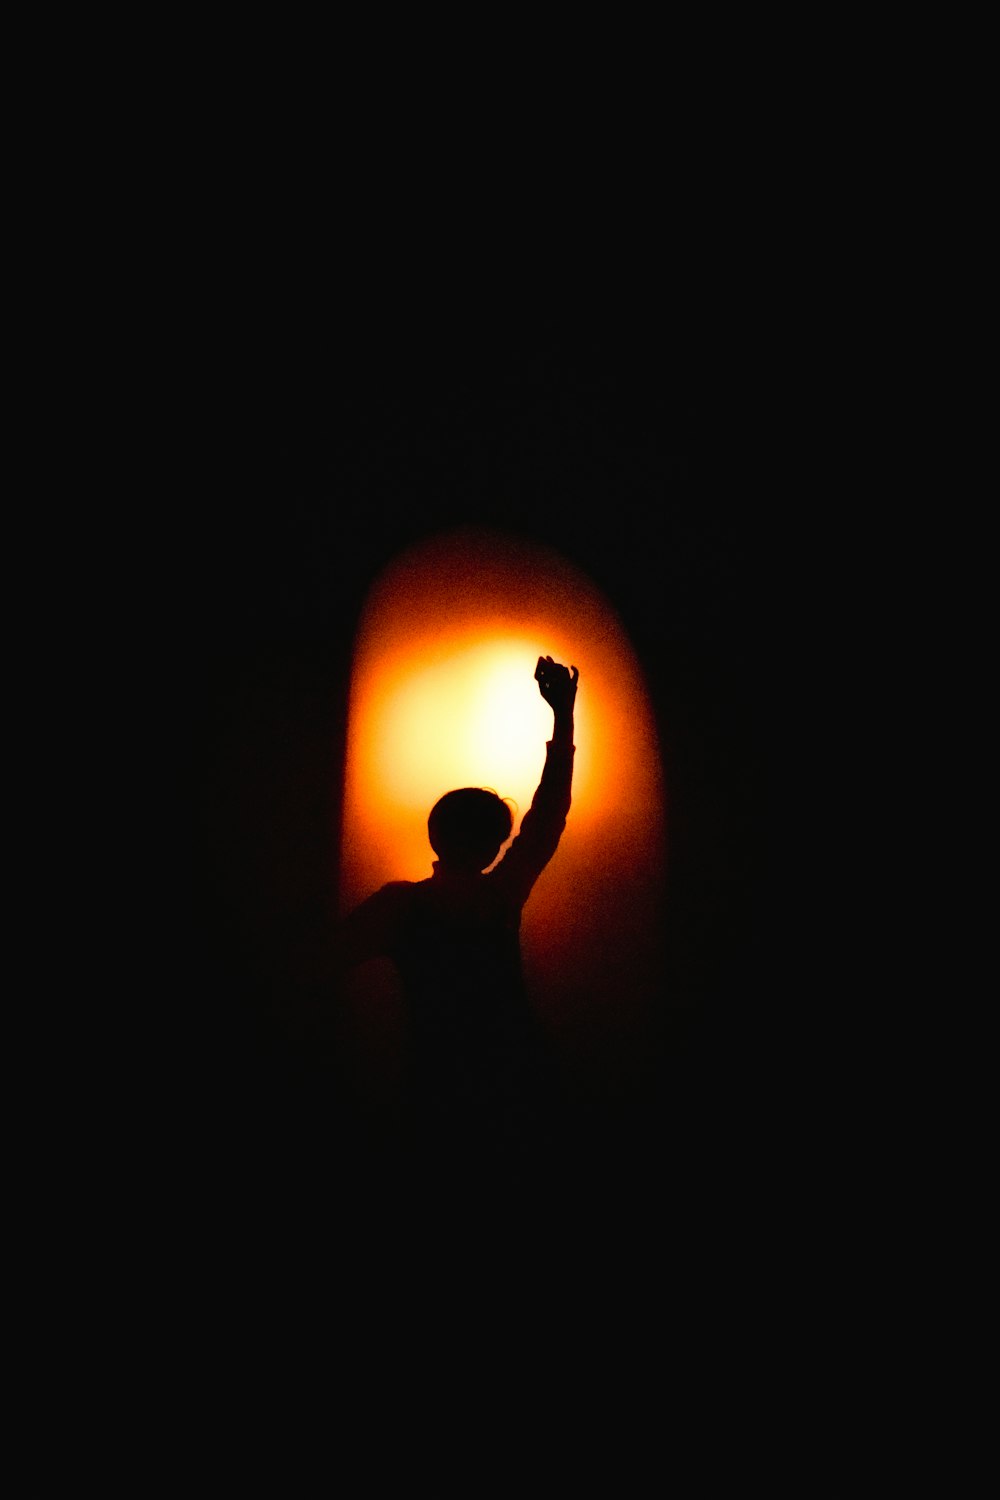 una silueta de una persona levantando el brazo en la oscuridad